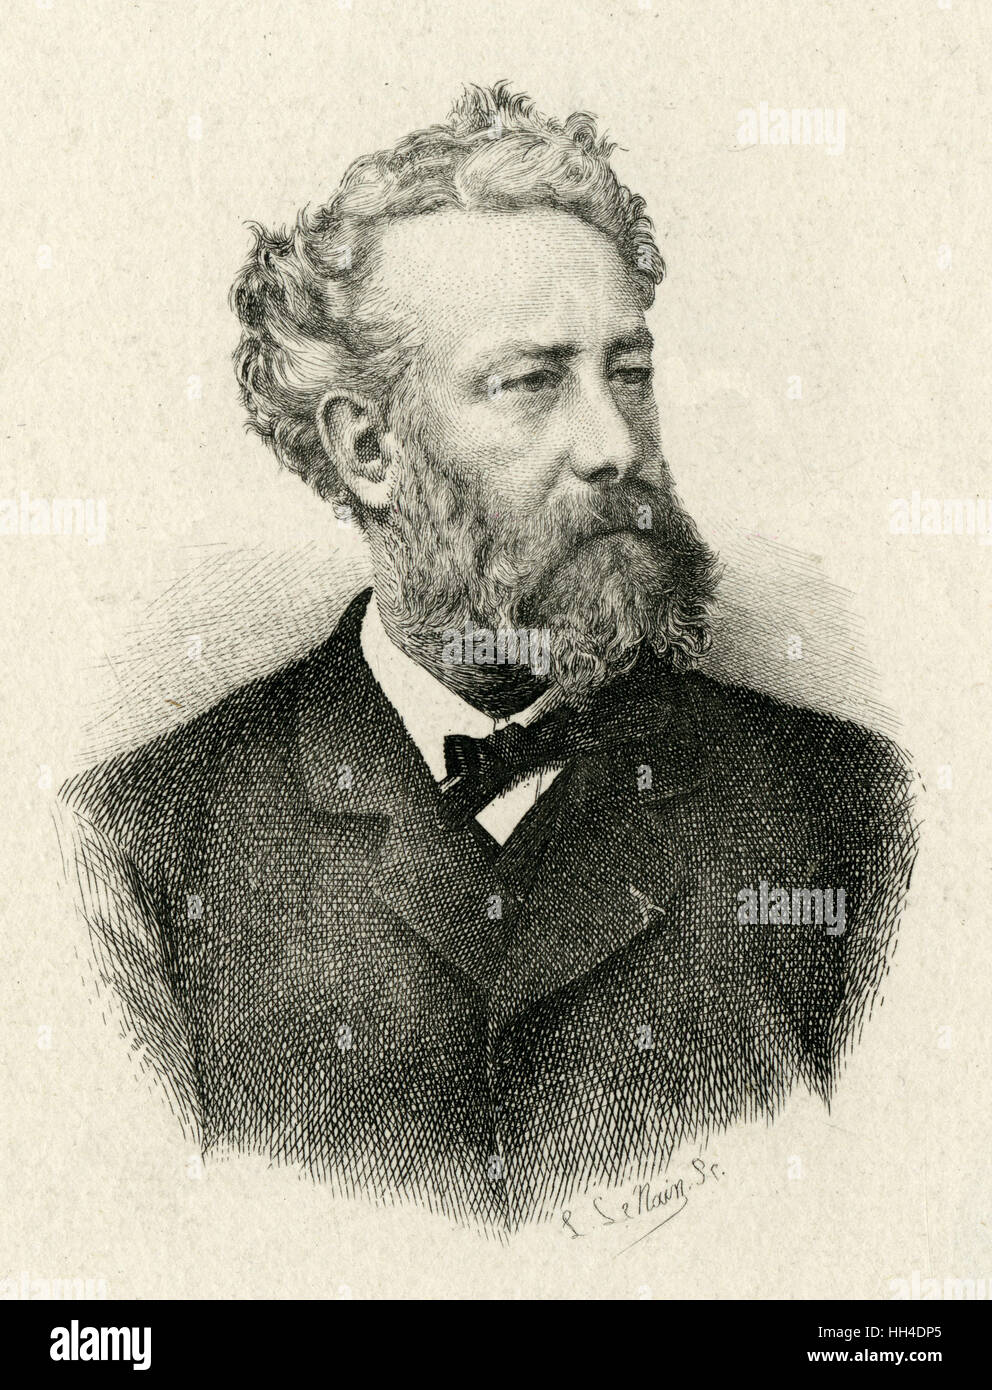 Jules Verne - Le Nain Stock Photo